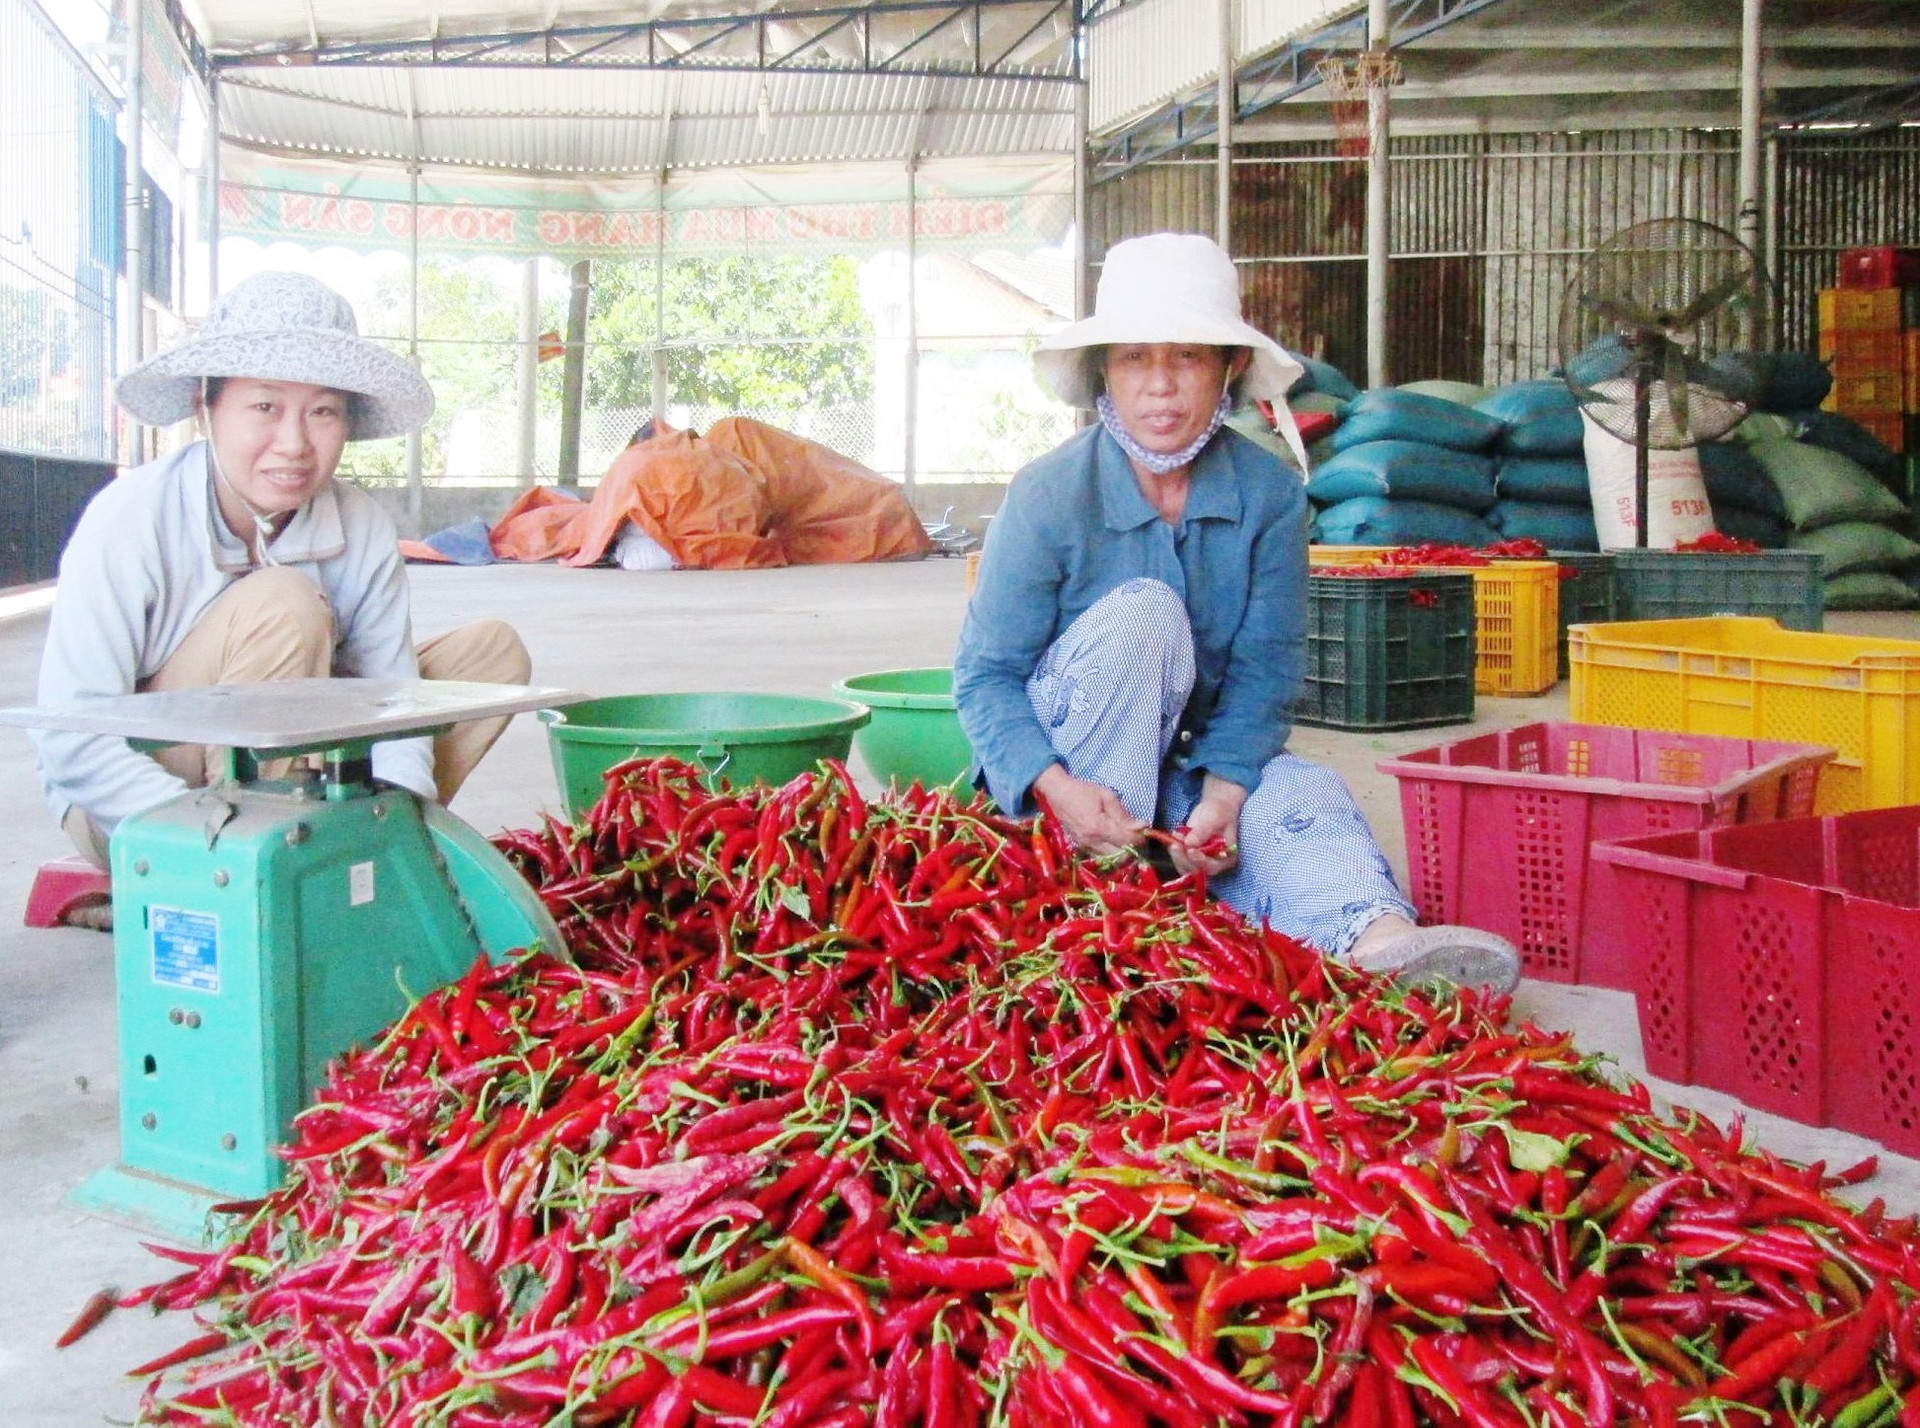 Với hơn 300ha đất chuyên canh cây ớt, thời gian tới Điện Bàn sẽ tập trung hỗ trợ phát triển mạnh các sản phẩm OCOP từ trái ớt. Ảnh: M.N